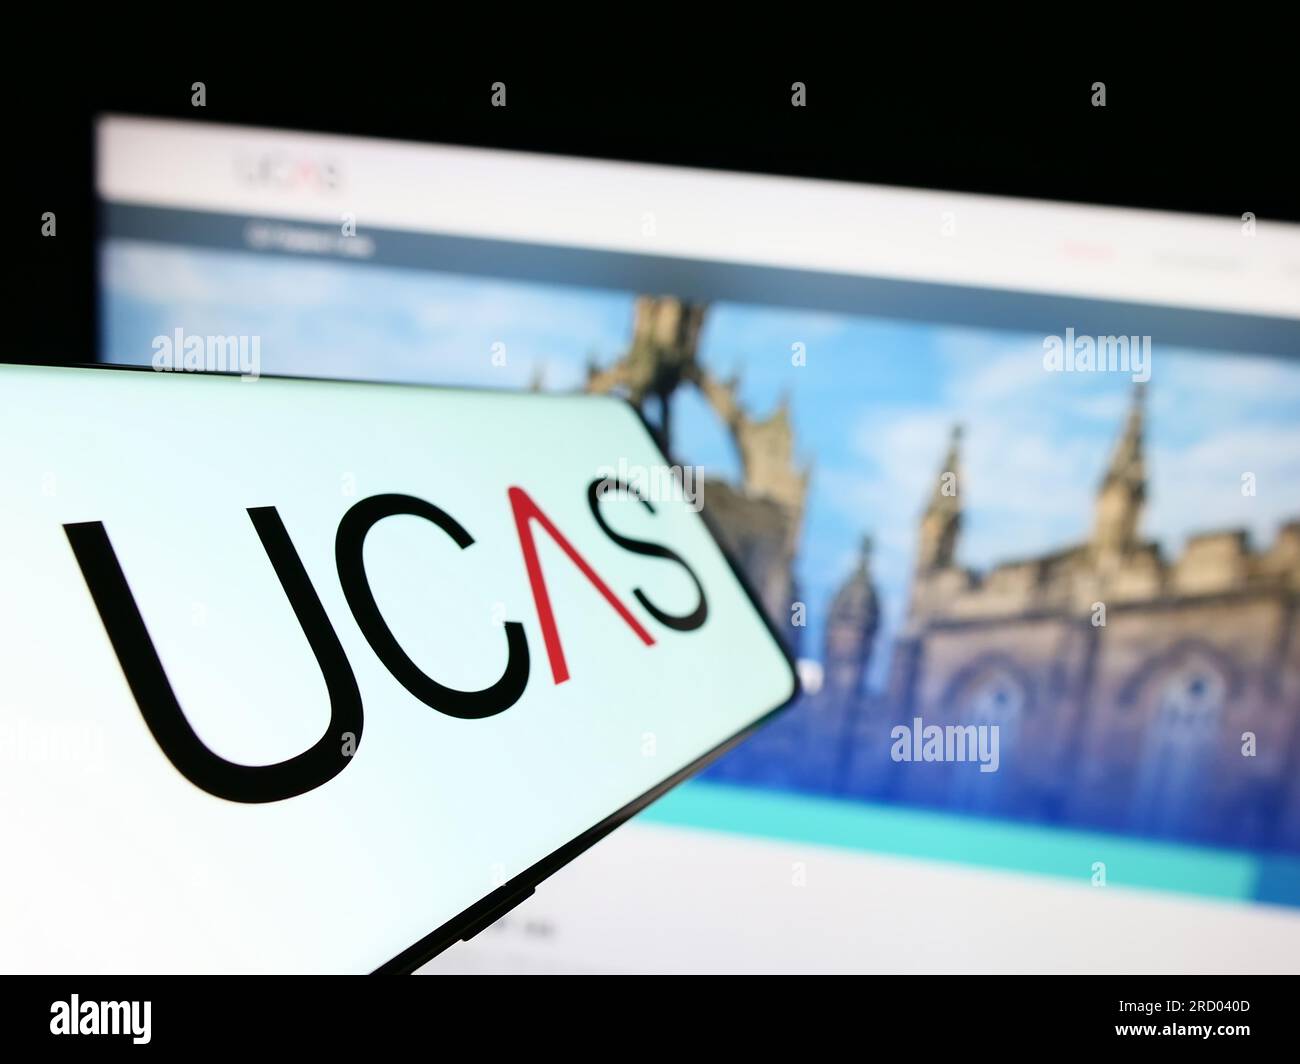 Smartphone con logo UCAS (Universities and Colleges Admissions Service) sullo schermo davanti al sito Web. Mettere a fuoco il display centrale sinistro del telefono. Foto Stock